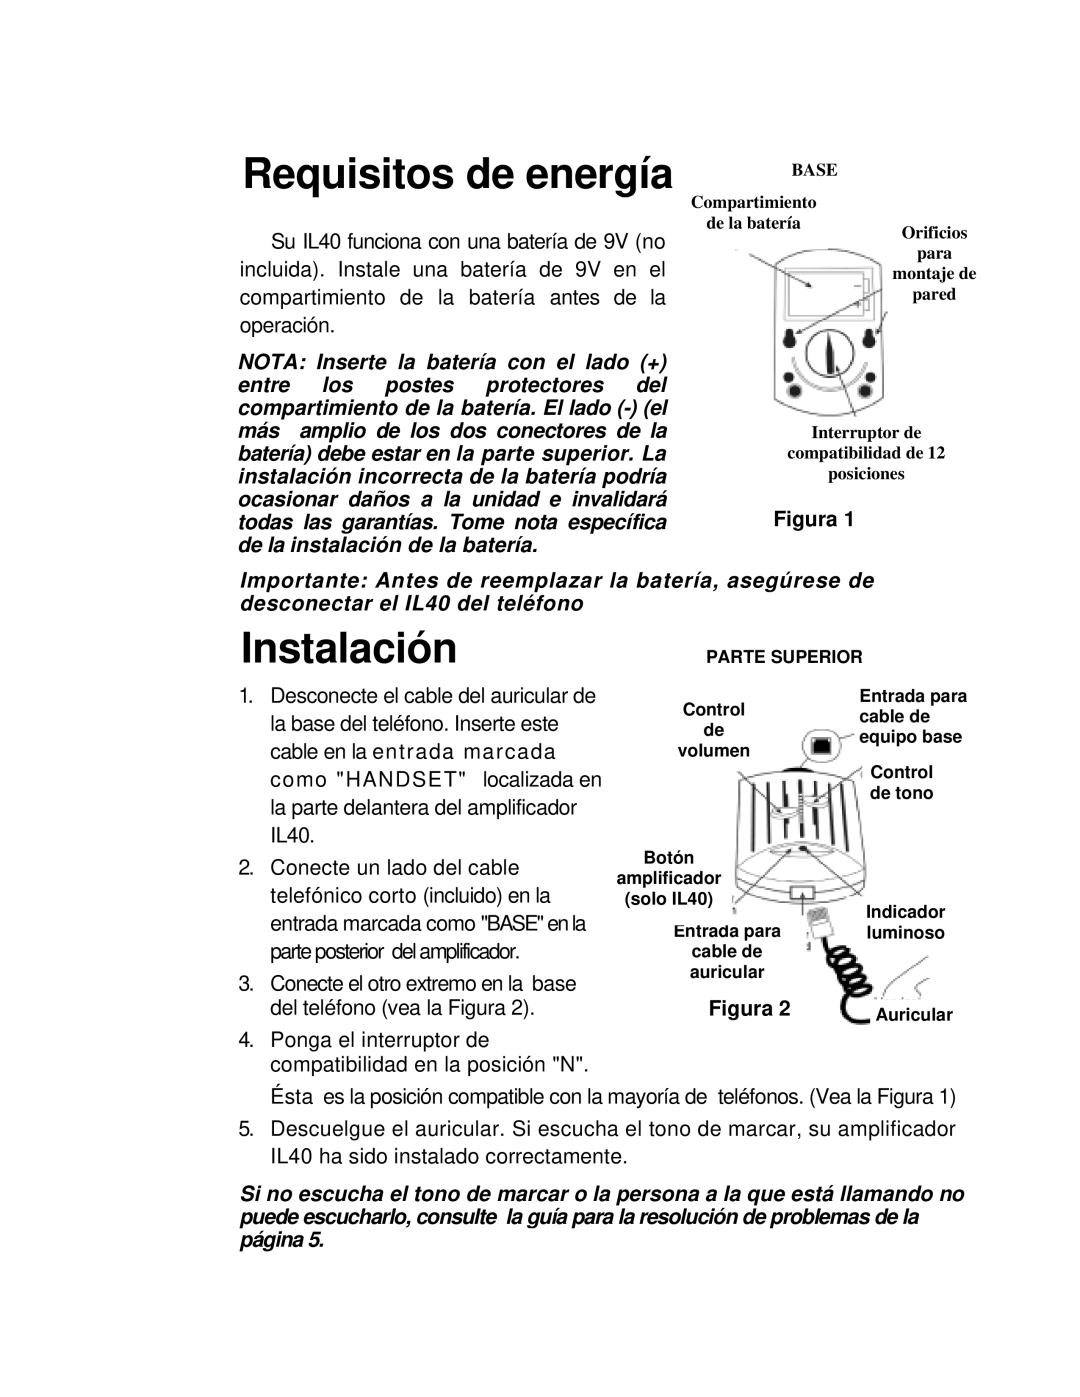 ClearSounds IL40 manual Requisitos de energía, Instalación, Figura 